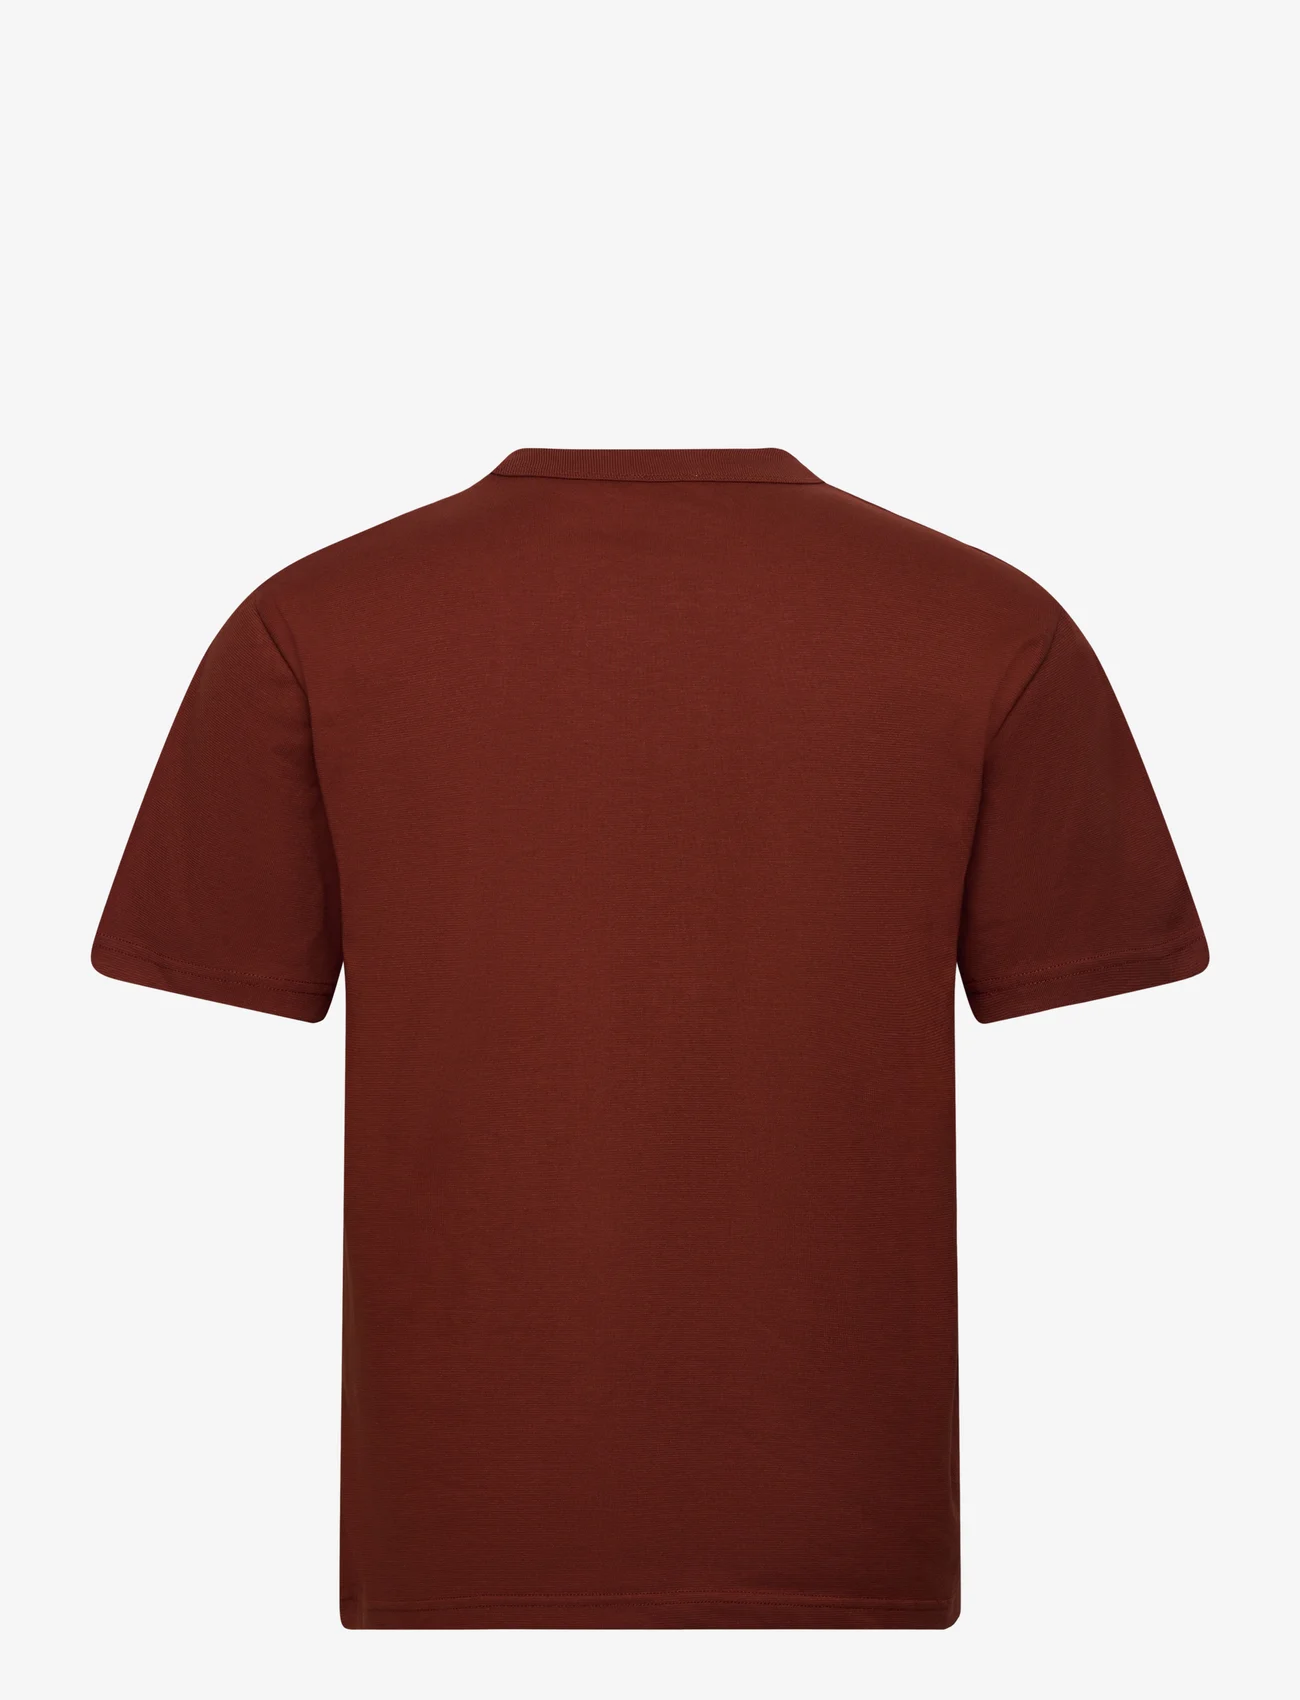 Armor Lux - Basic T-shirt "Callac" Héritage - deep paprika - 1